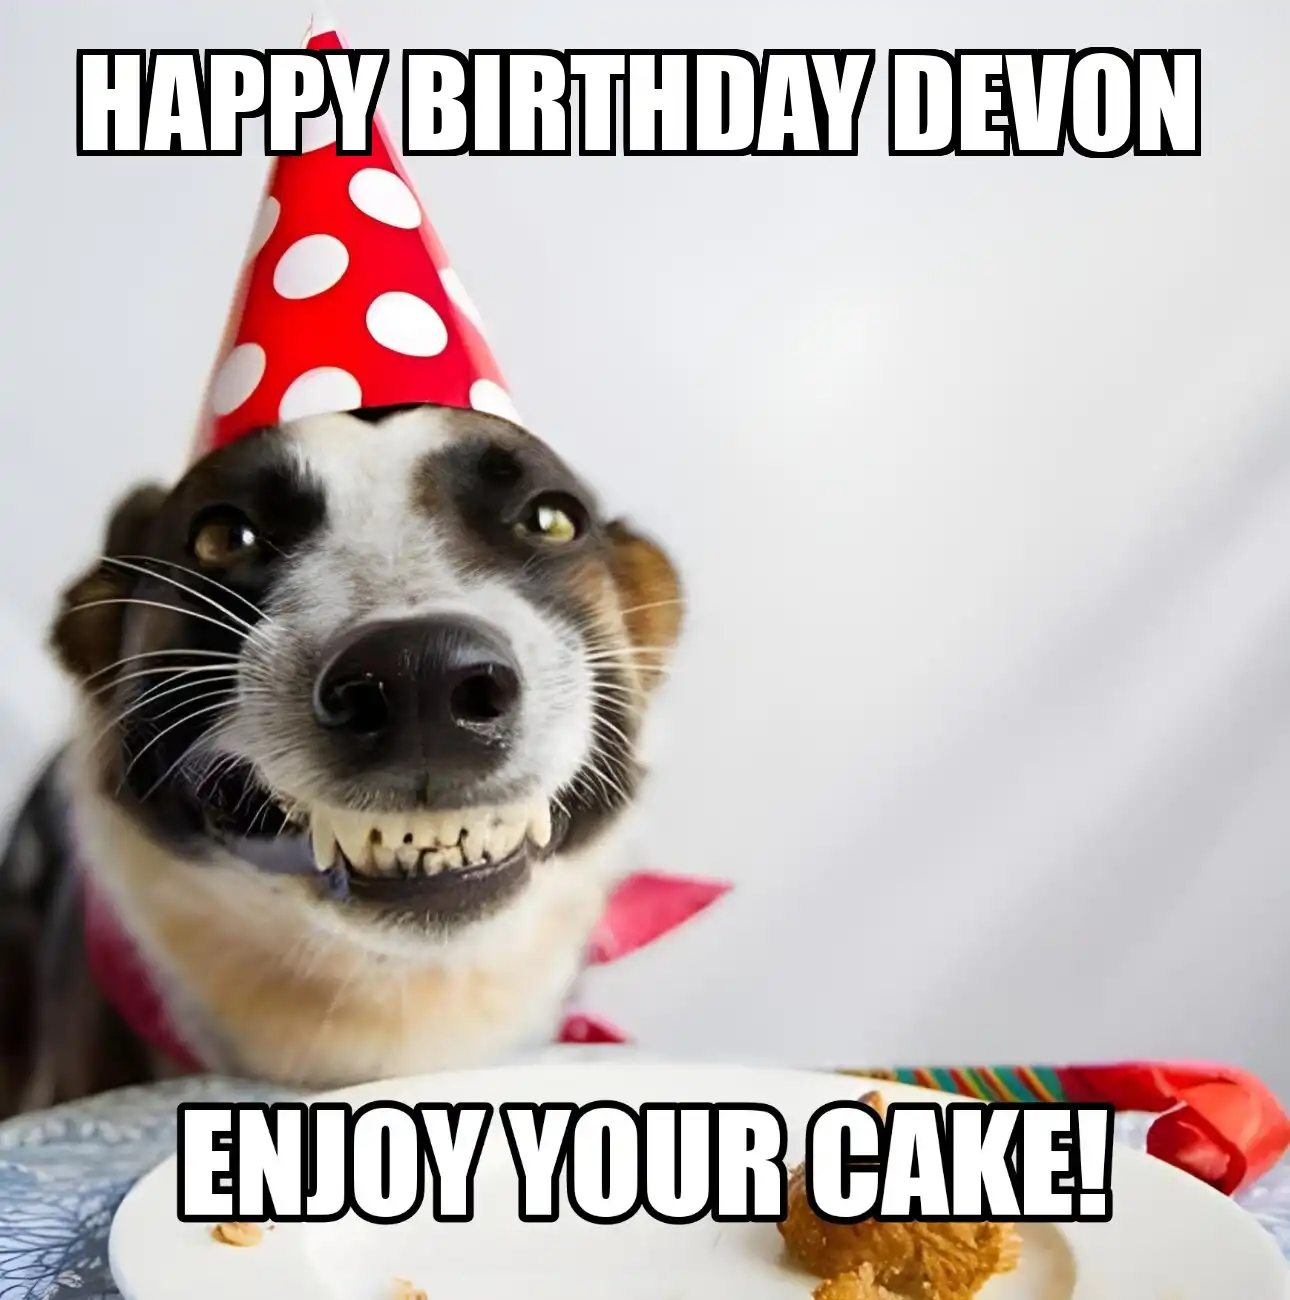 Happy Birthday Devon Enjoy Your Cake Dog Meme